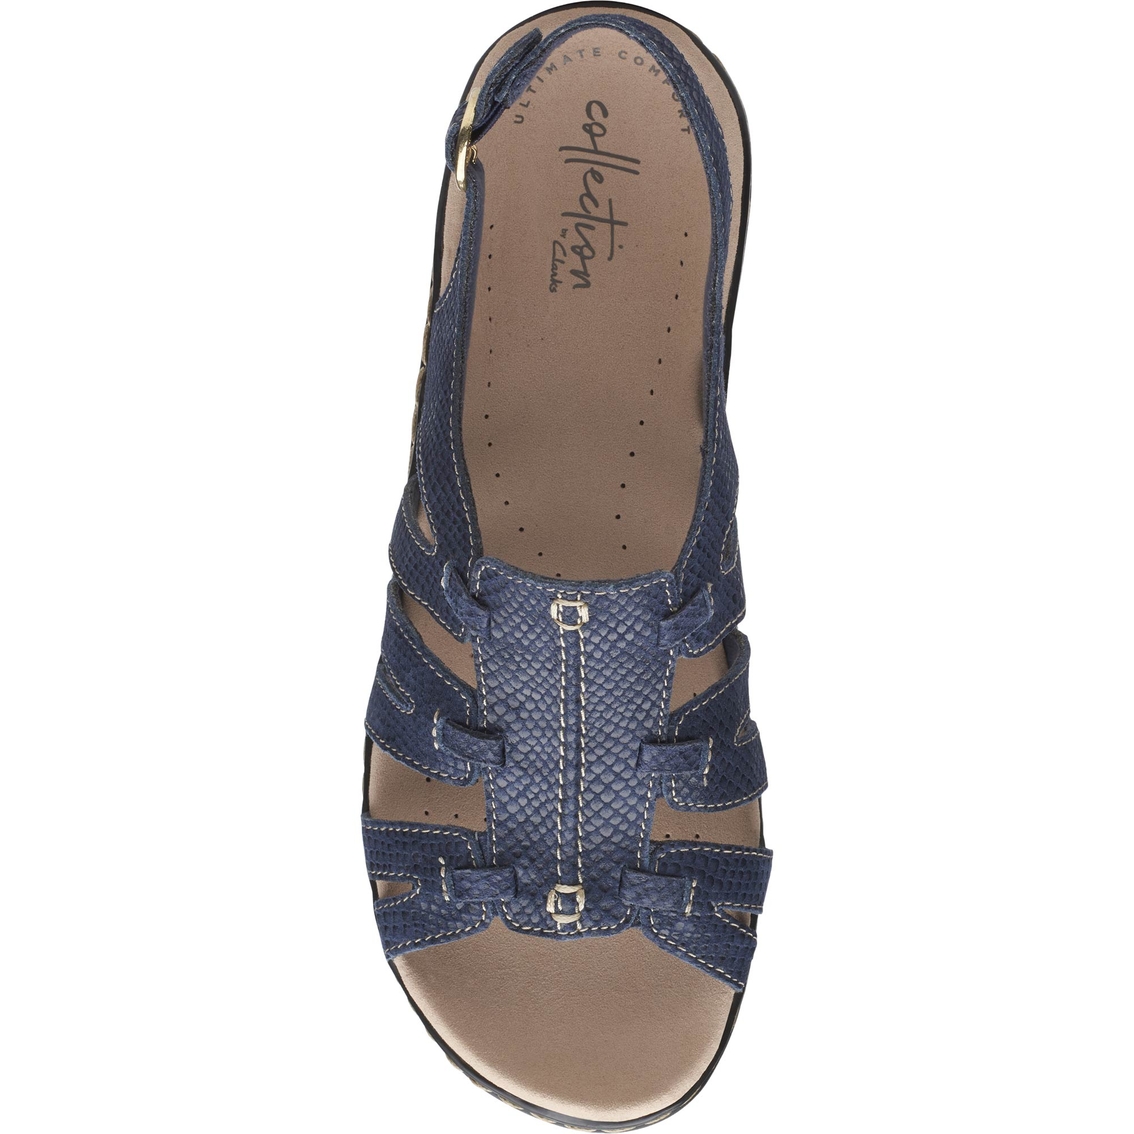 Clarks Lexi Marigold Q Sandals | Low-heel | Shoes | Shop The Exchange